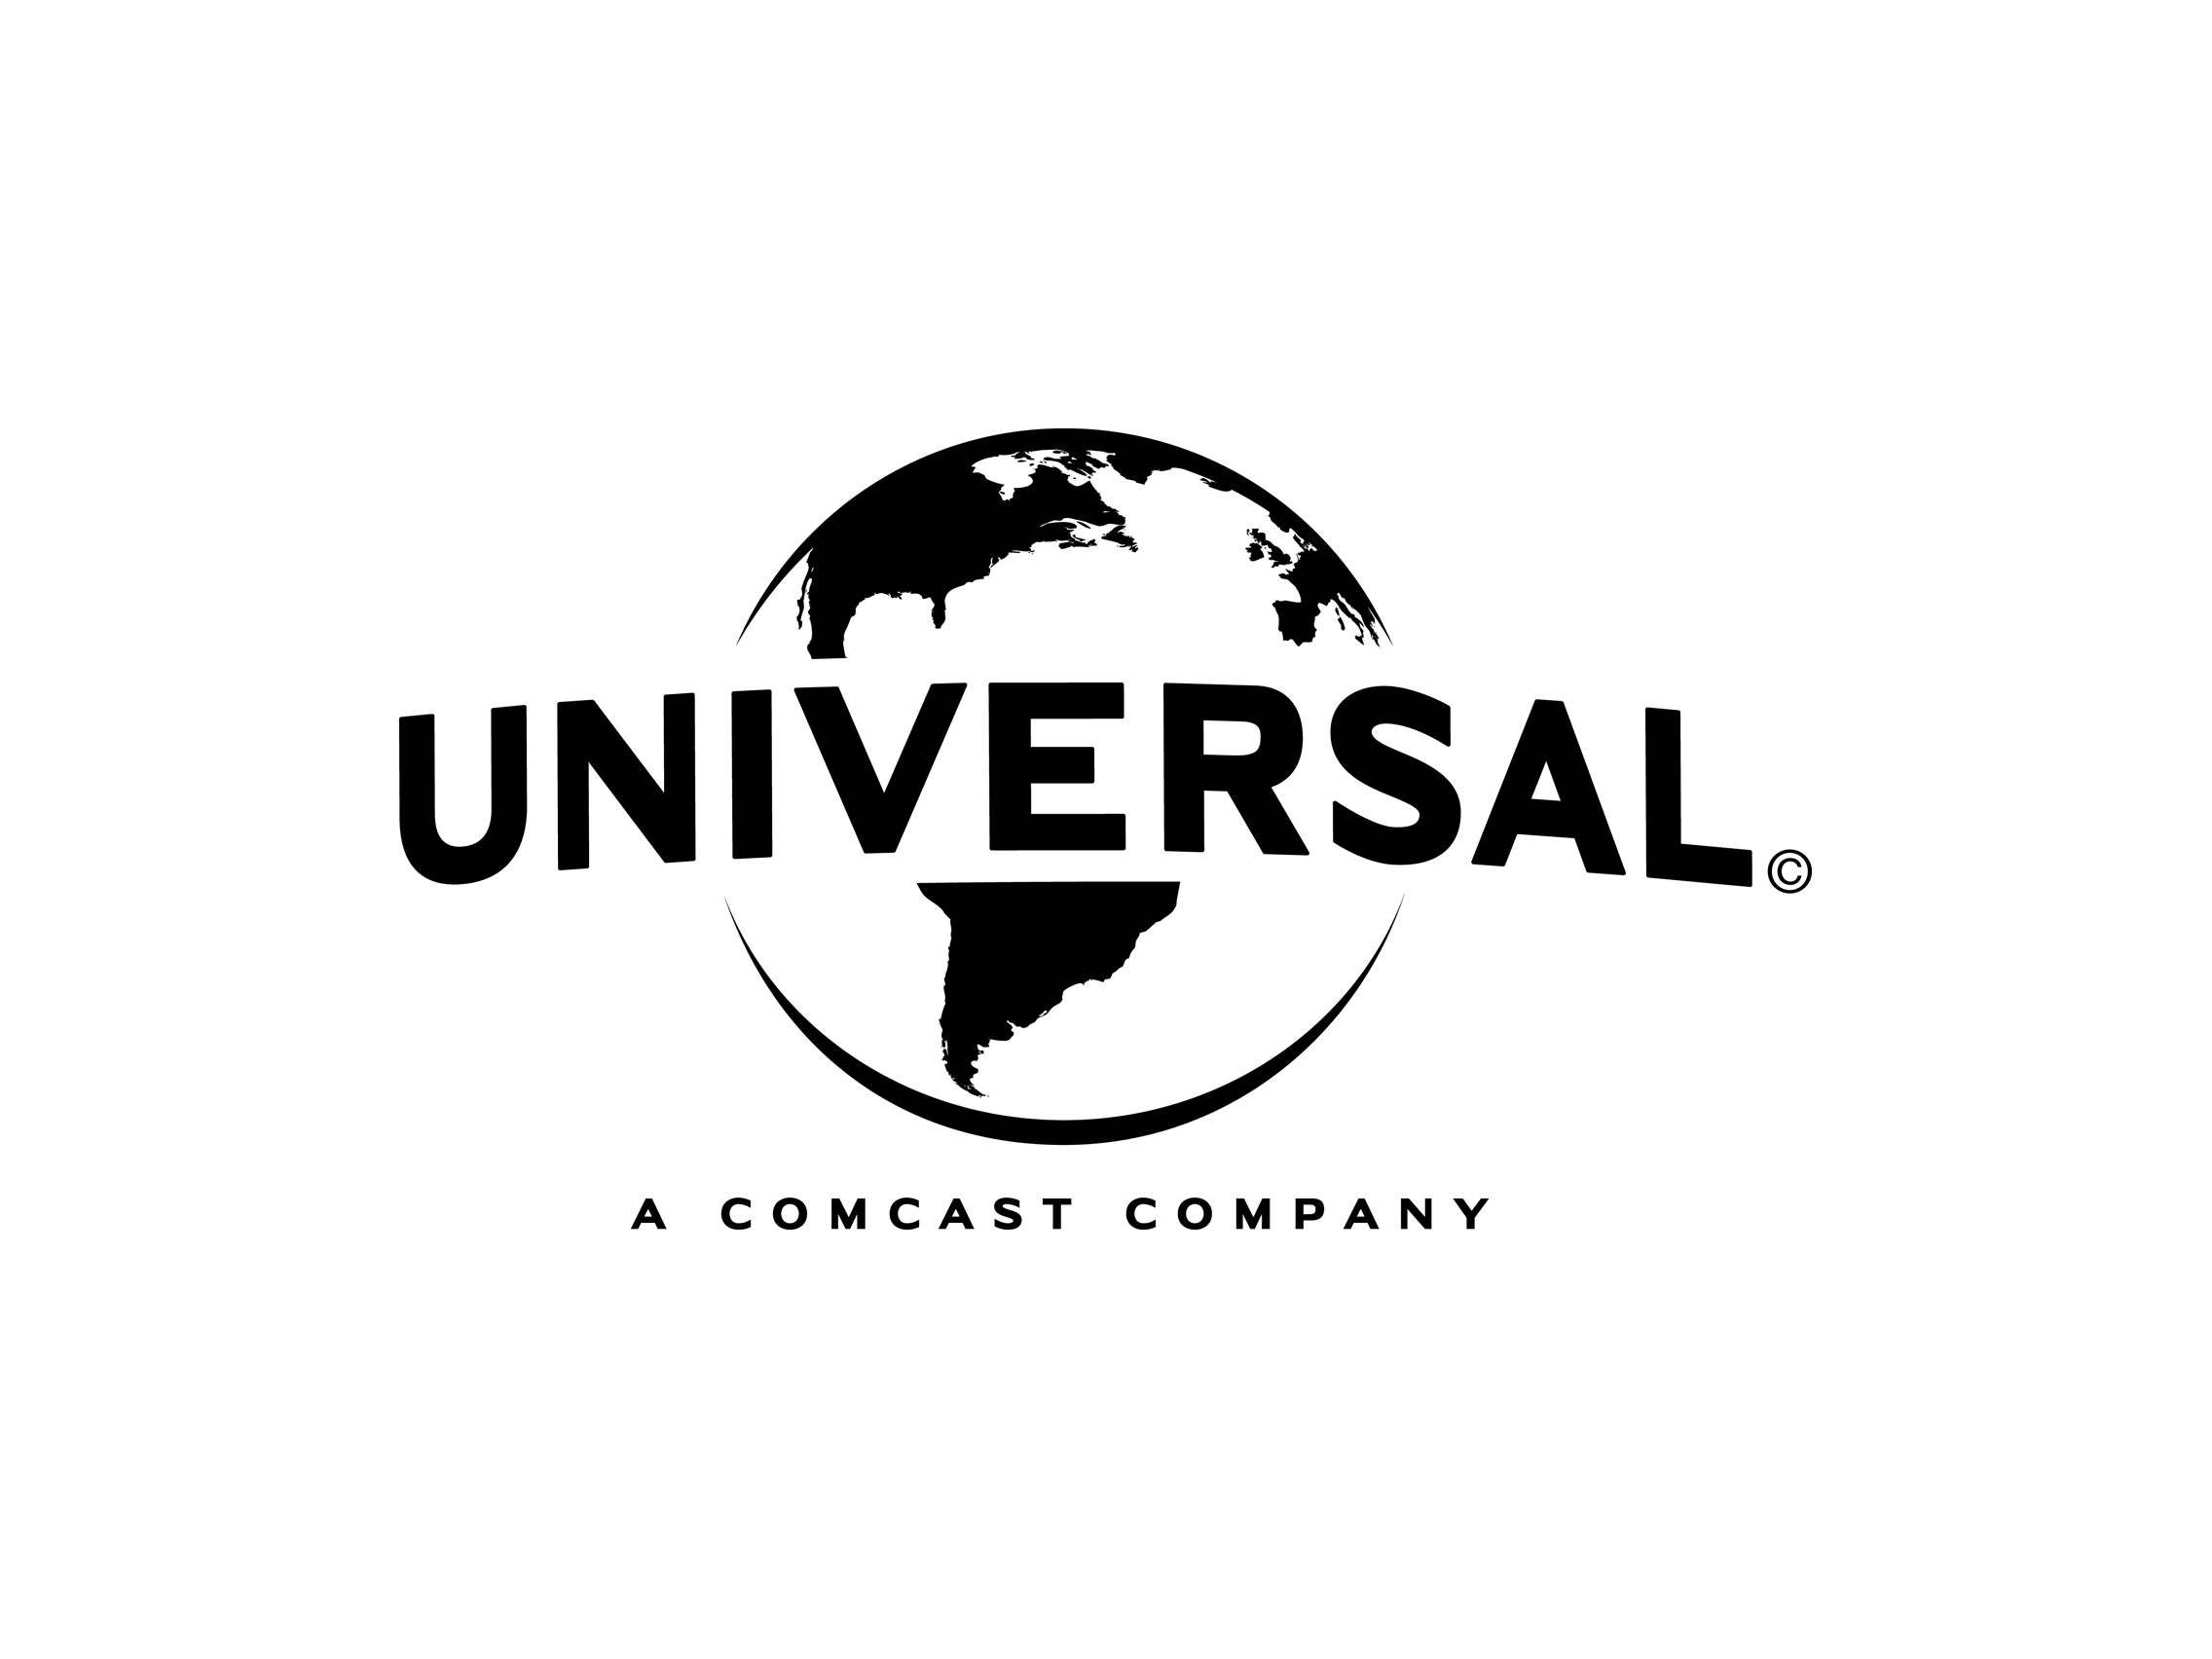 Universal Logo - Universal logo | Logok